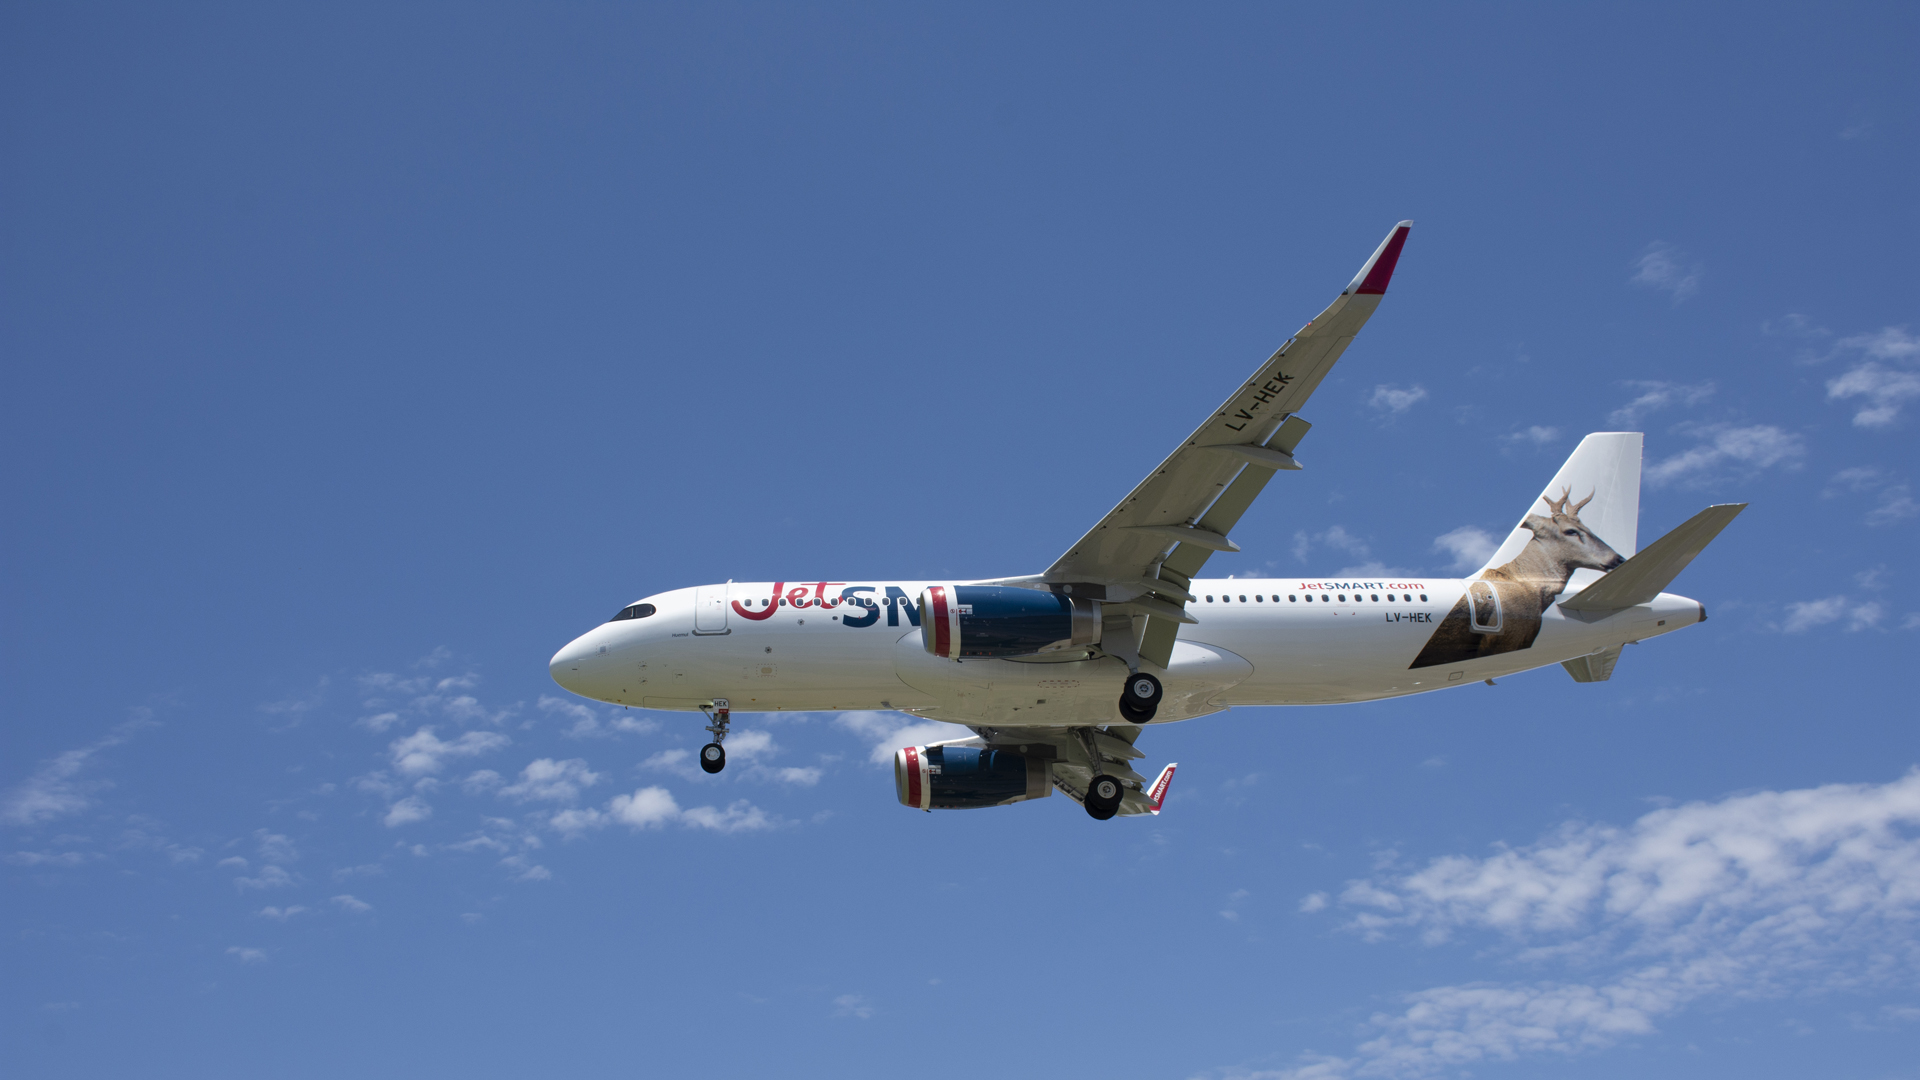 JetSmart se refirió al anuncio de Avianca de desistir de la integración con Viva Air: “Hay que minimizar los riesgos de la concentración de mercado en un solo operador”